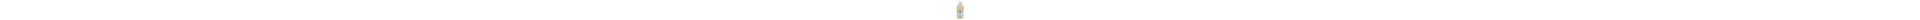 Liant de broyage caseine SCHMINCKE - Flacon:500 ml 